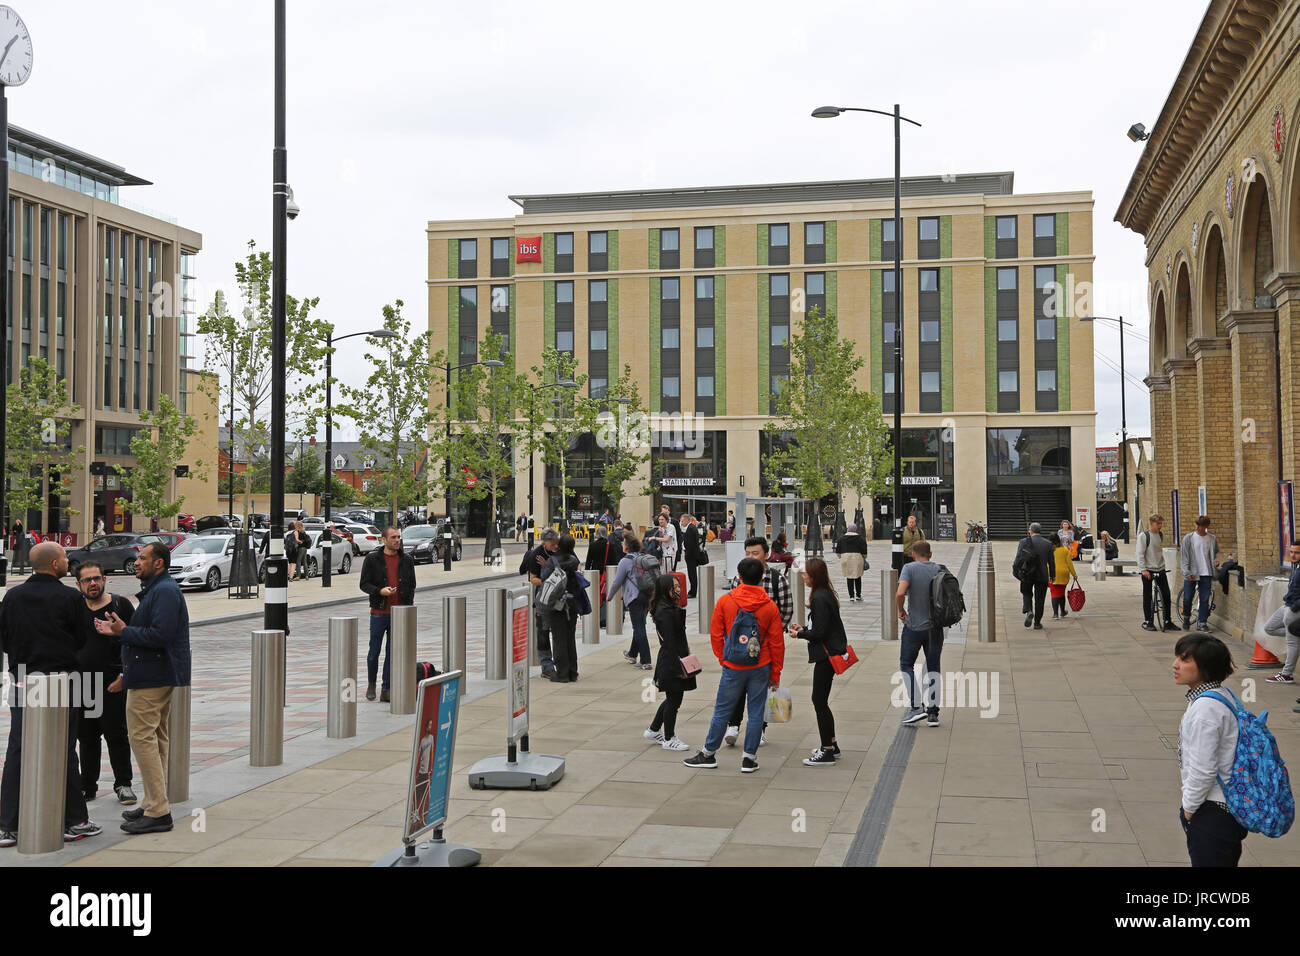 Recién remodelado Estación Plaza en Cambridge, Reino Unido. Muestra el nuevo hotel Ibis (centro) y la estación de tren (extrema derecha).También bolardos de acero anti-terrorismo. Foto de stock